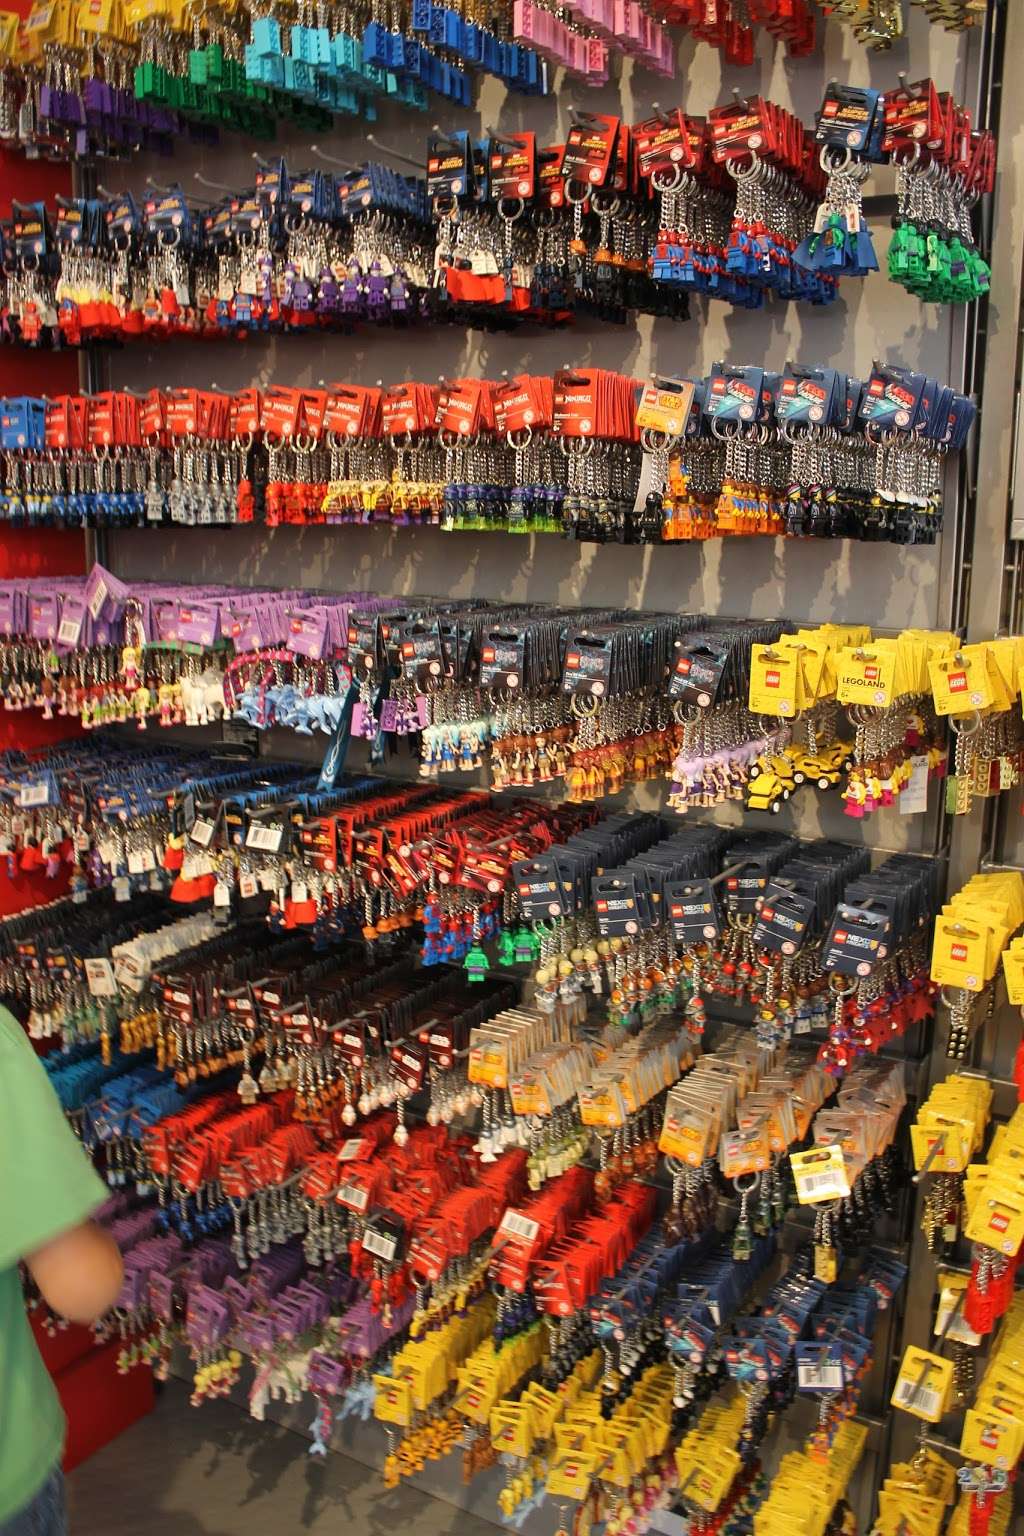 The Big Shop | 1 Legoland Dr, Carlsbad, CA 92008, USA | Phone: (760) 918-5497